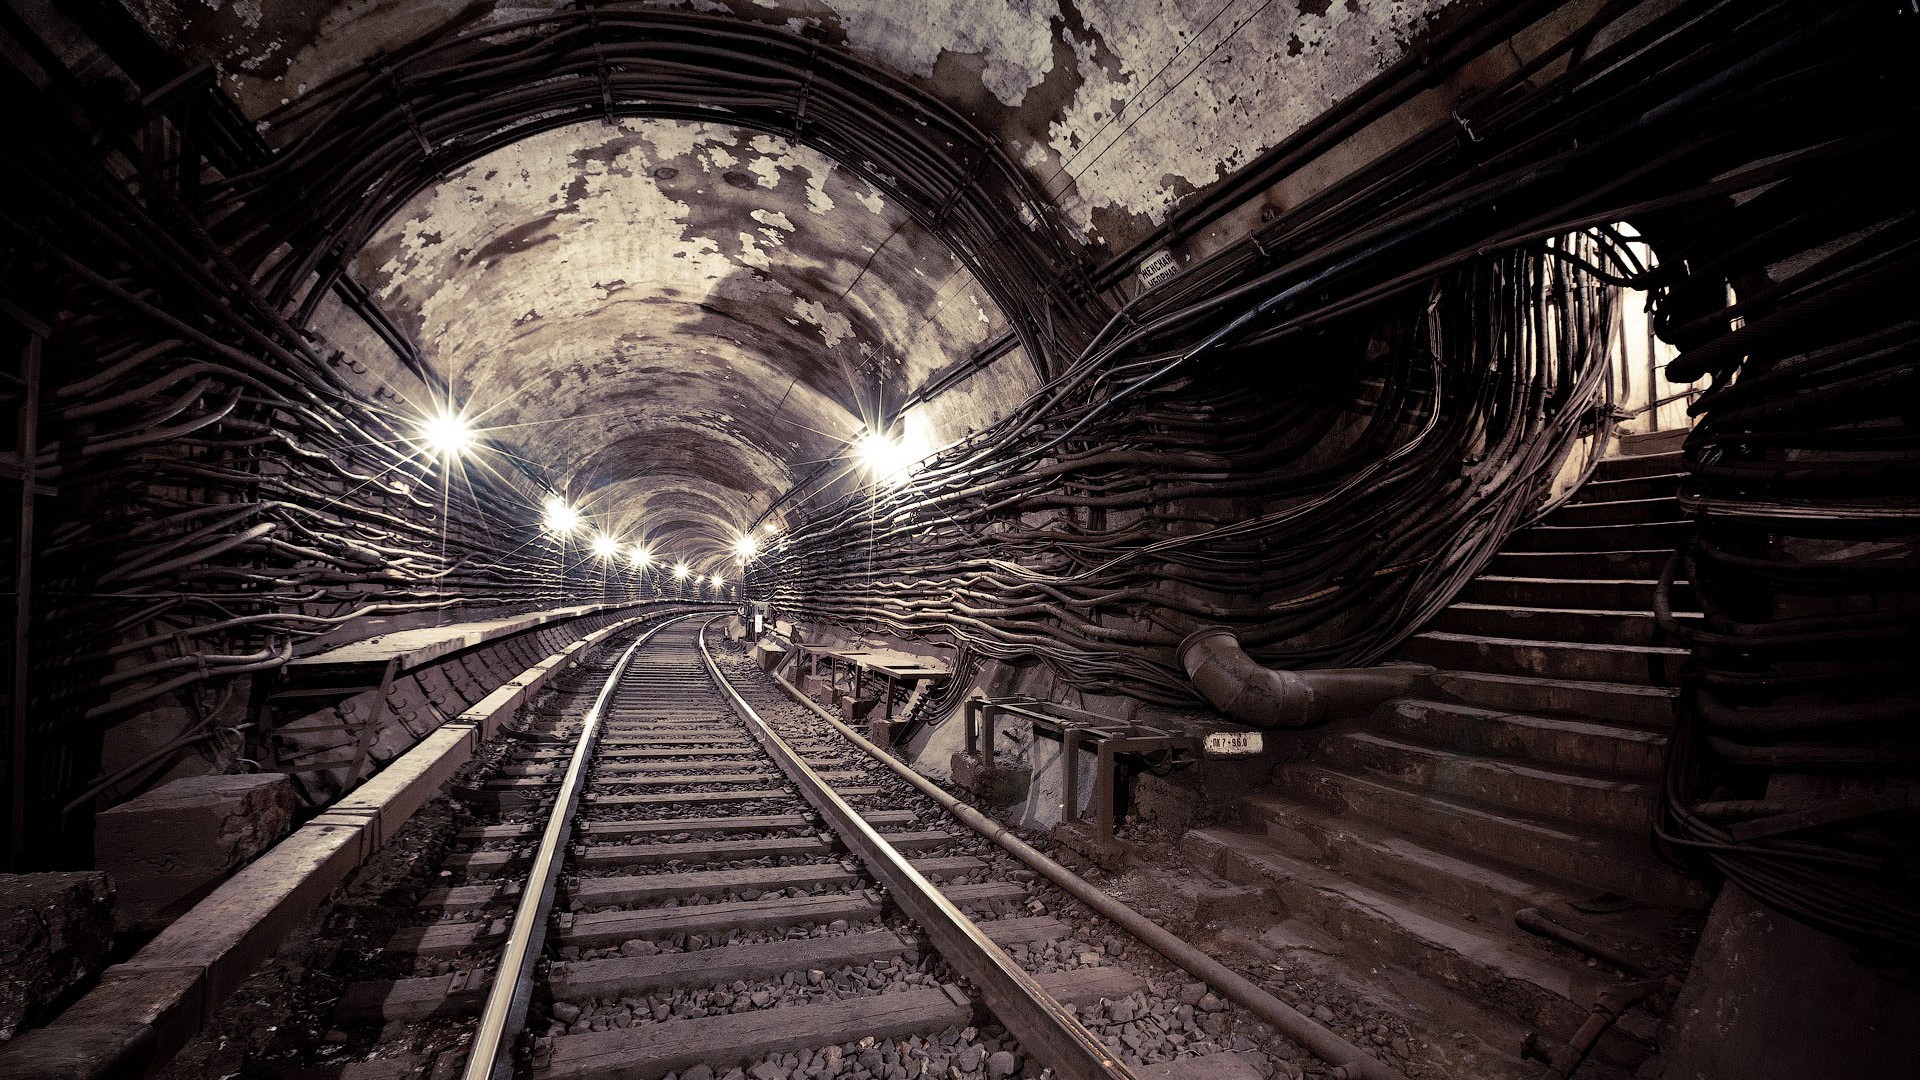 General 1920x1080 tunnel railway subway underground Russia